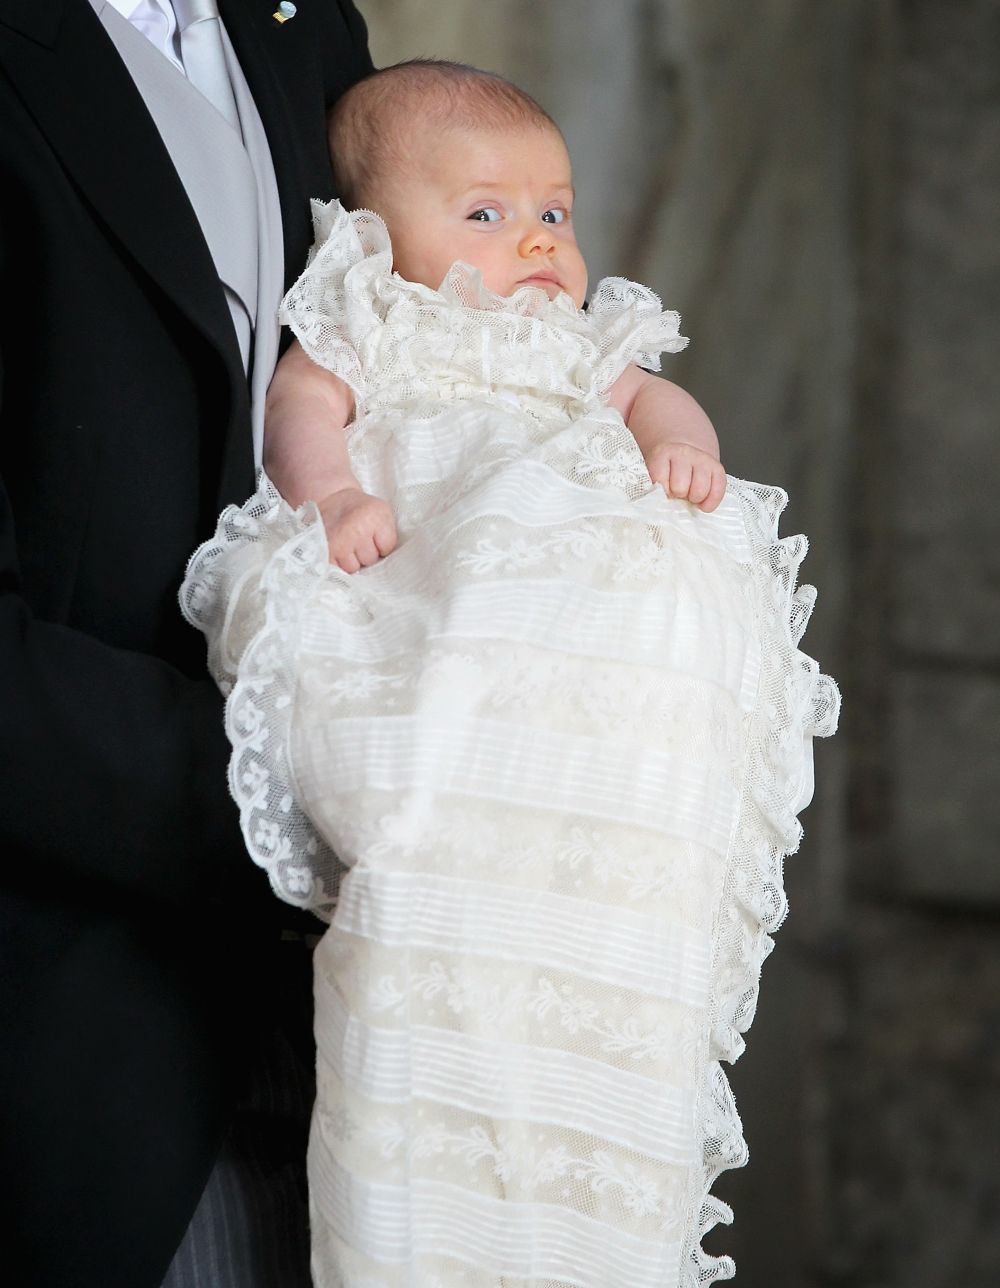 Printesa Estelle a Suediei are toate sansele sa devina noul bebelus regal favorit. Cat de simpatica e micuta de 3 ani